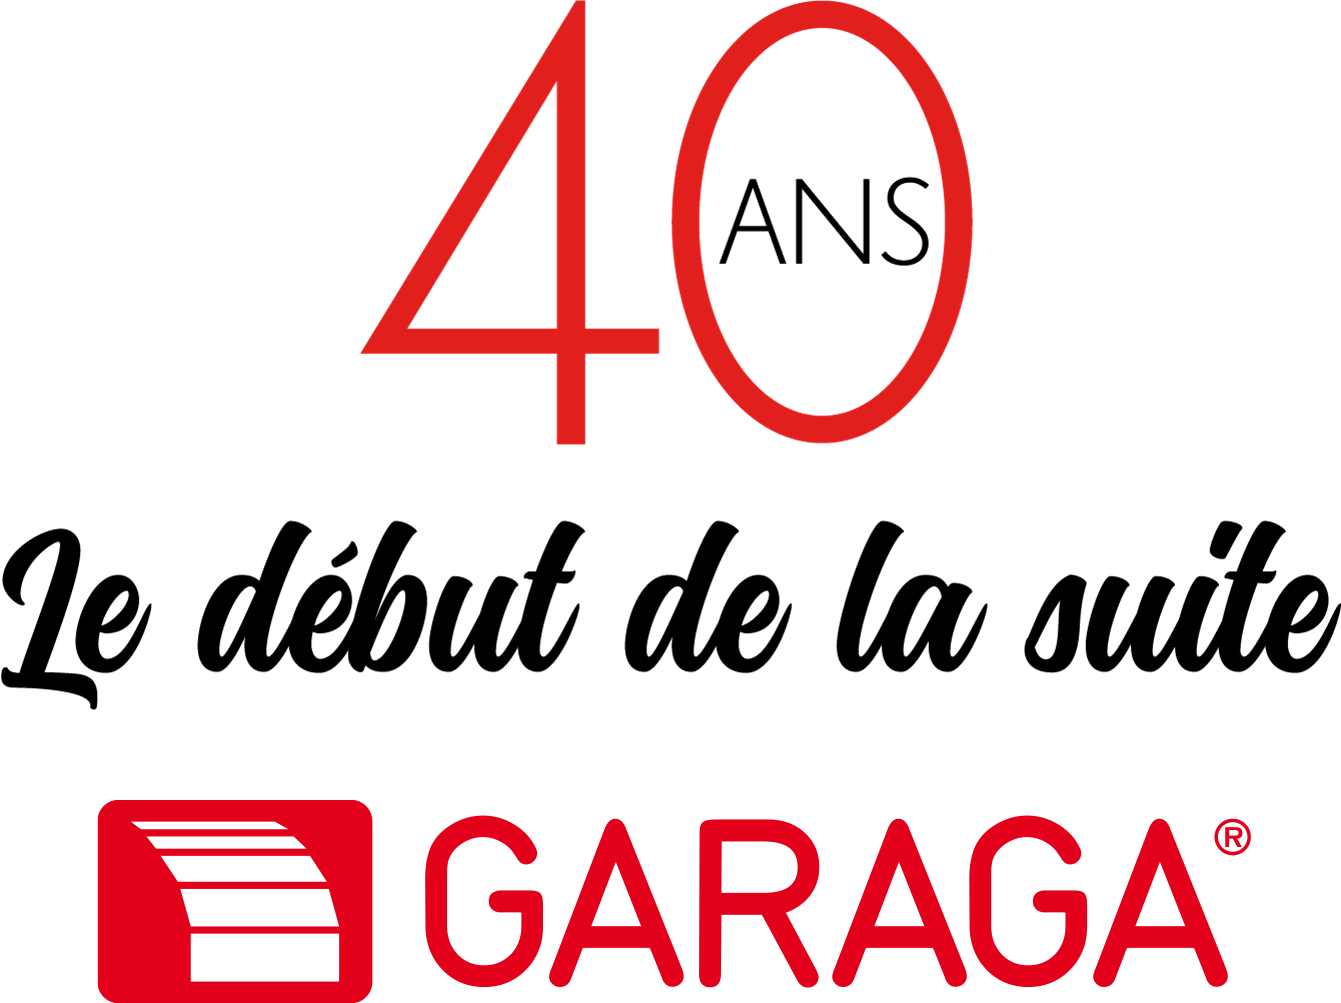 40 ans, Le début de la suite avec logo Garaga